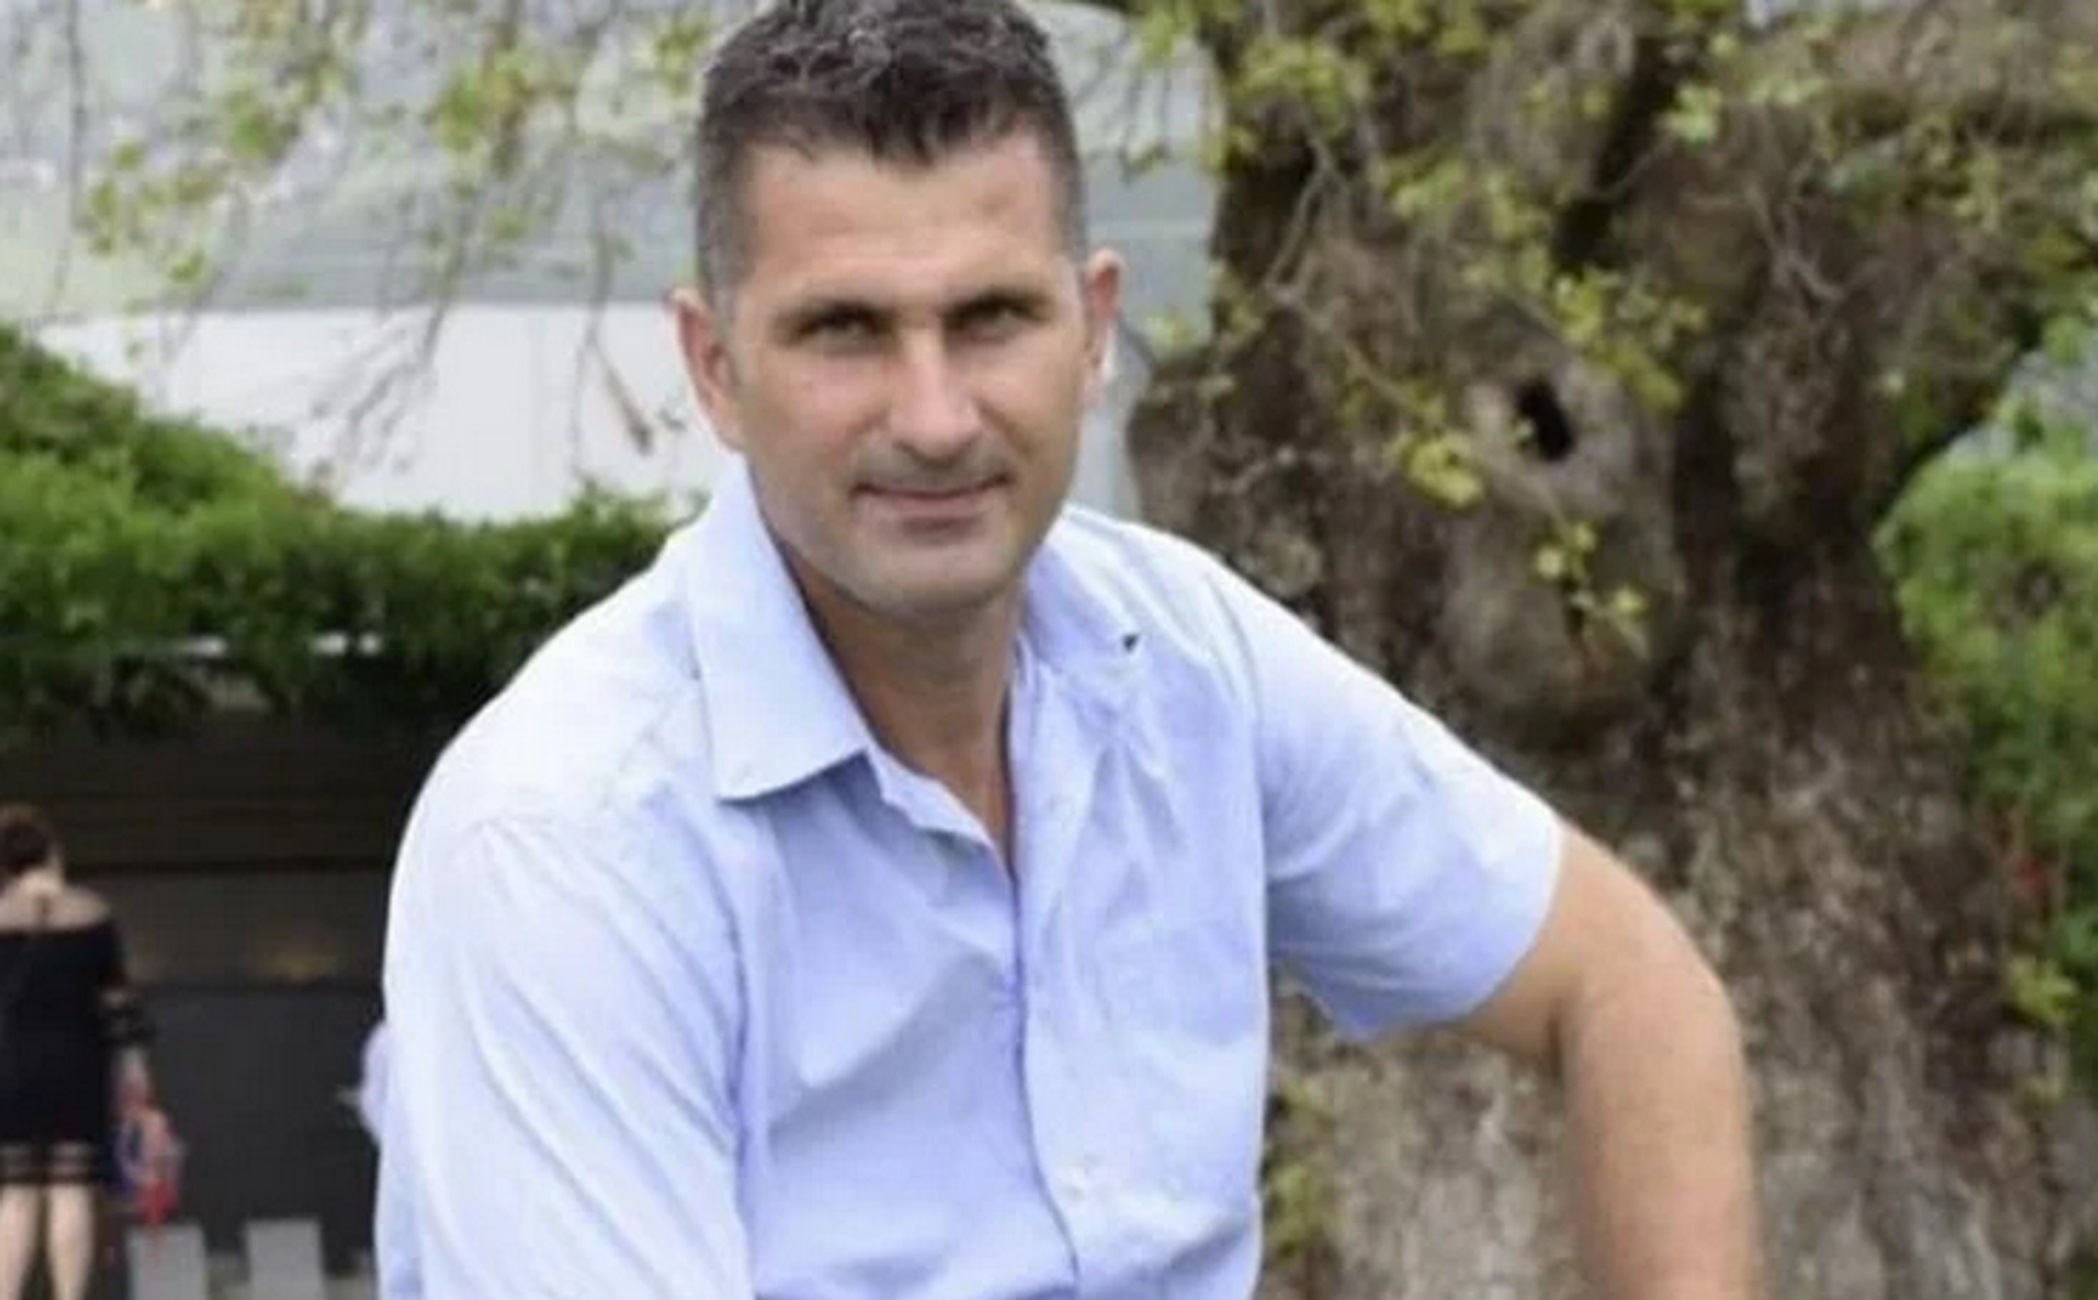 Ευρυτανία: «Ο Εκαβίτης ήταν δοτικός αλλά άτυχος» – Τι λέει συνάδελφος για τον θάνατο του 46χρονου σε γκρεμό